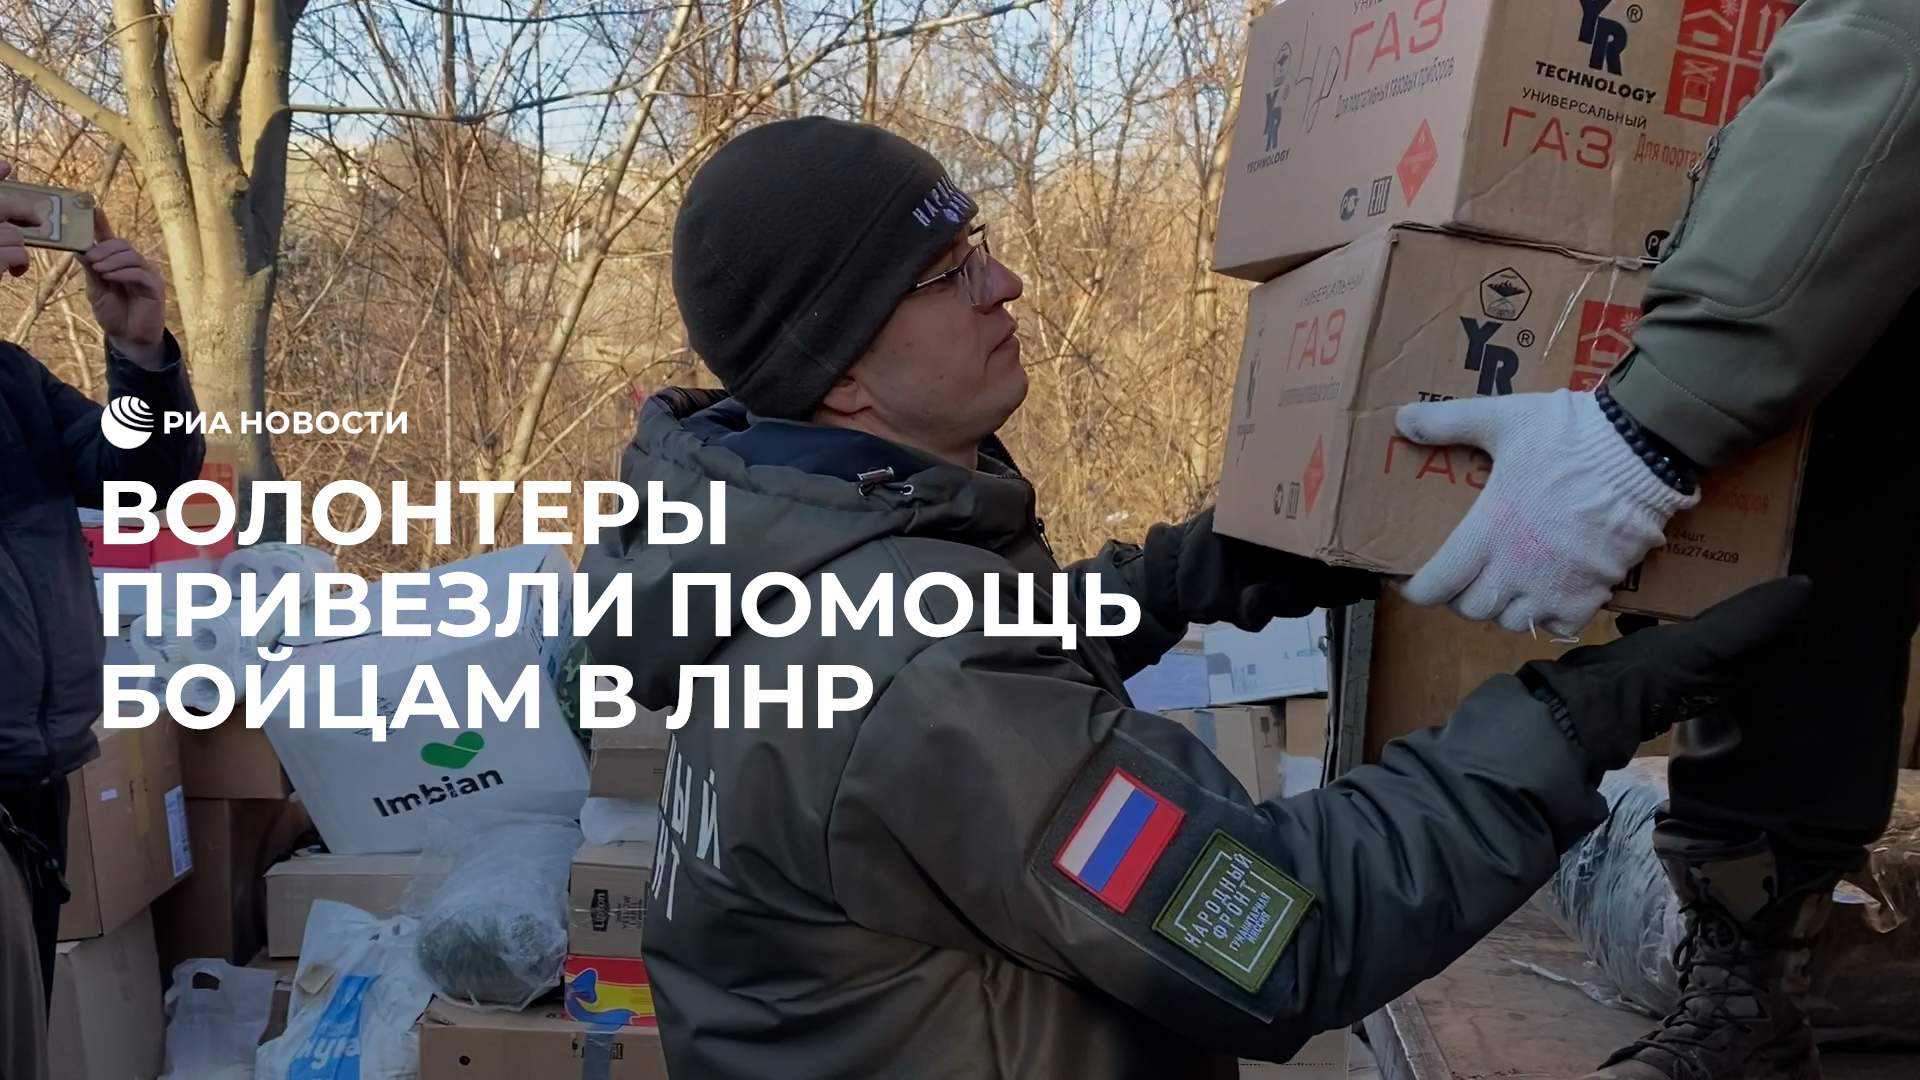 Волонтеры из Татарстана доставили гумпомощь бойцам в ЛНР